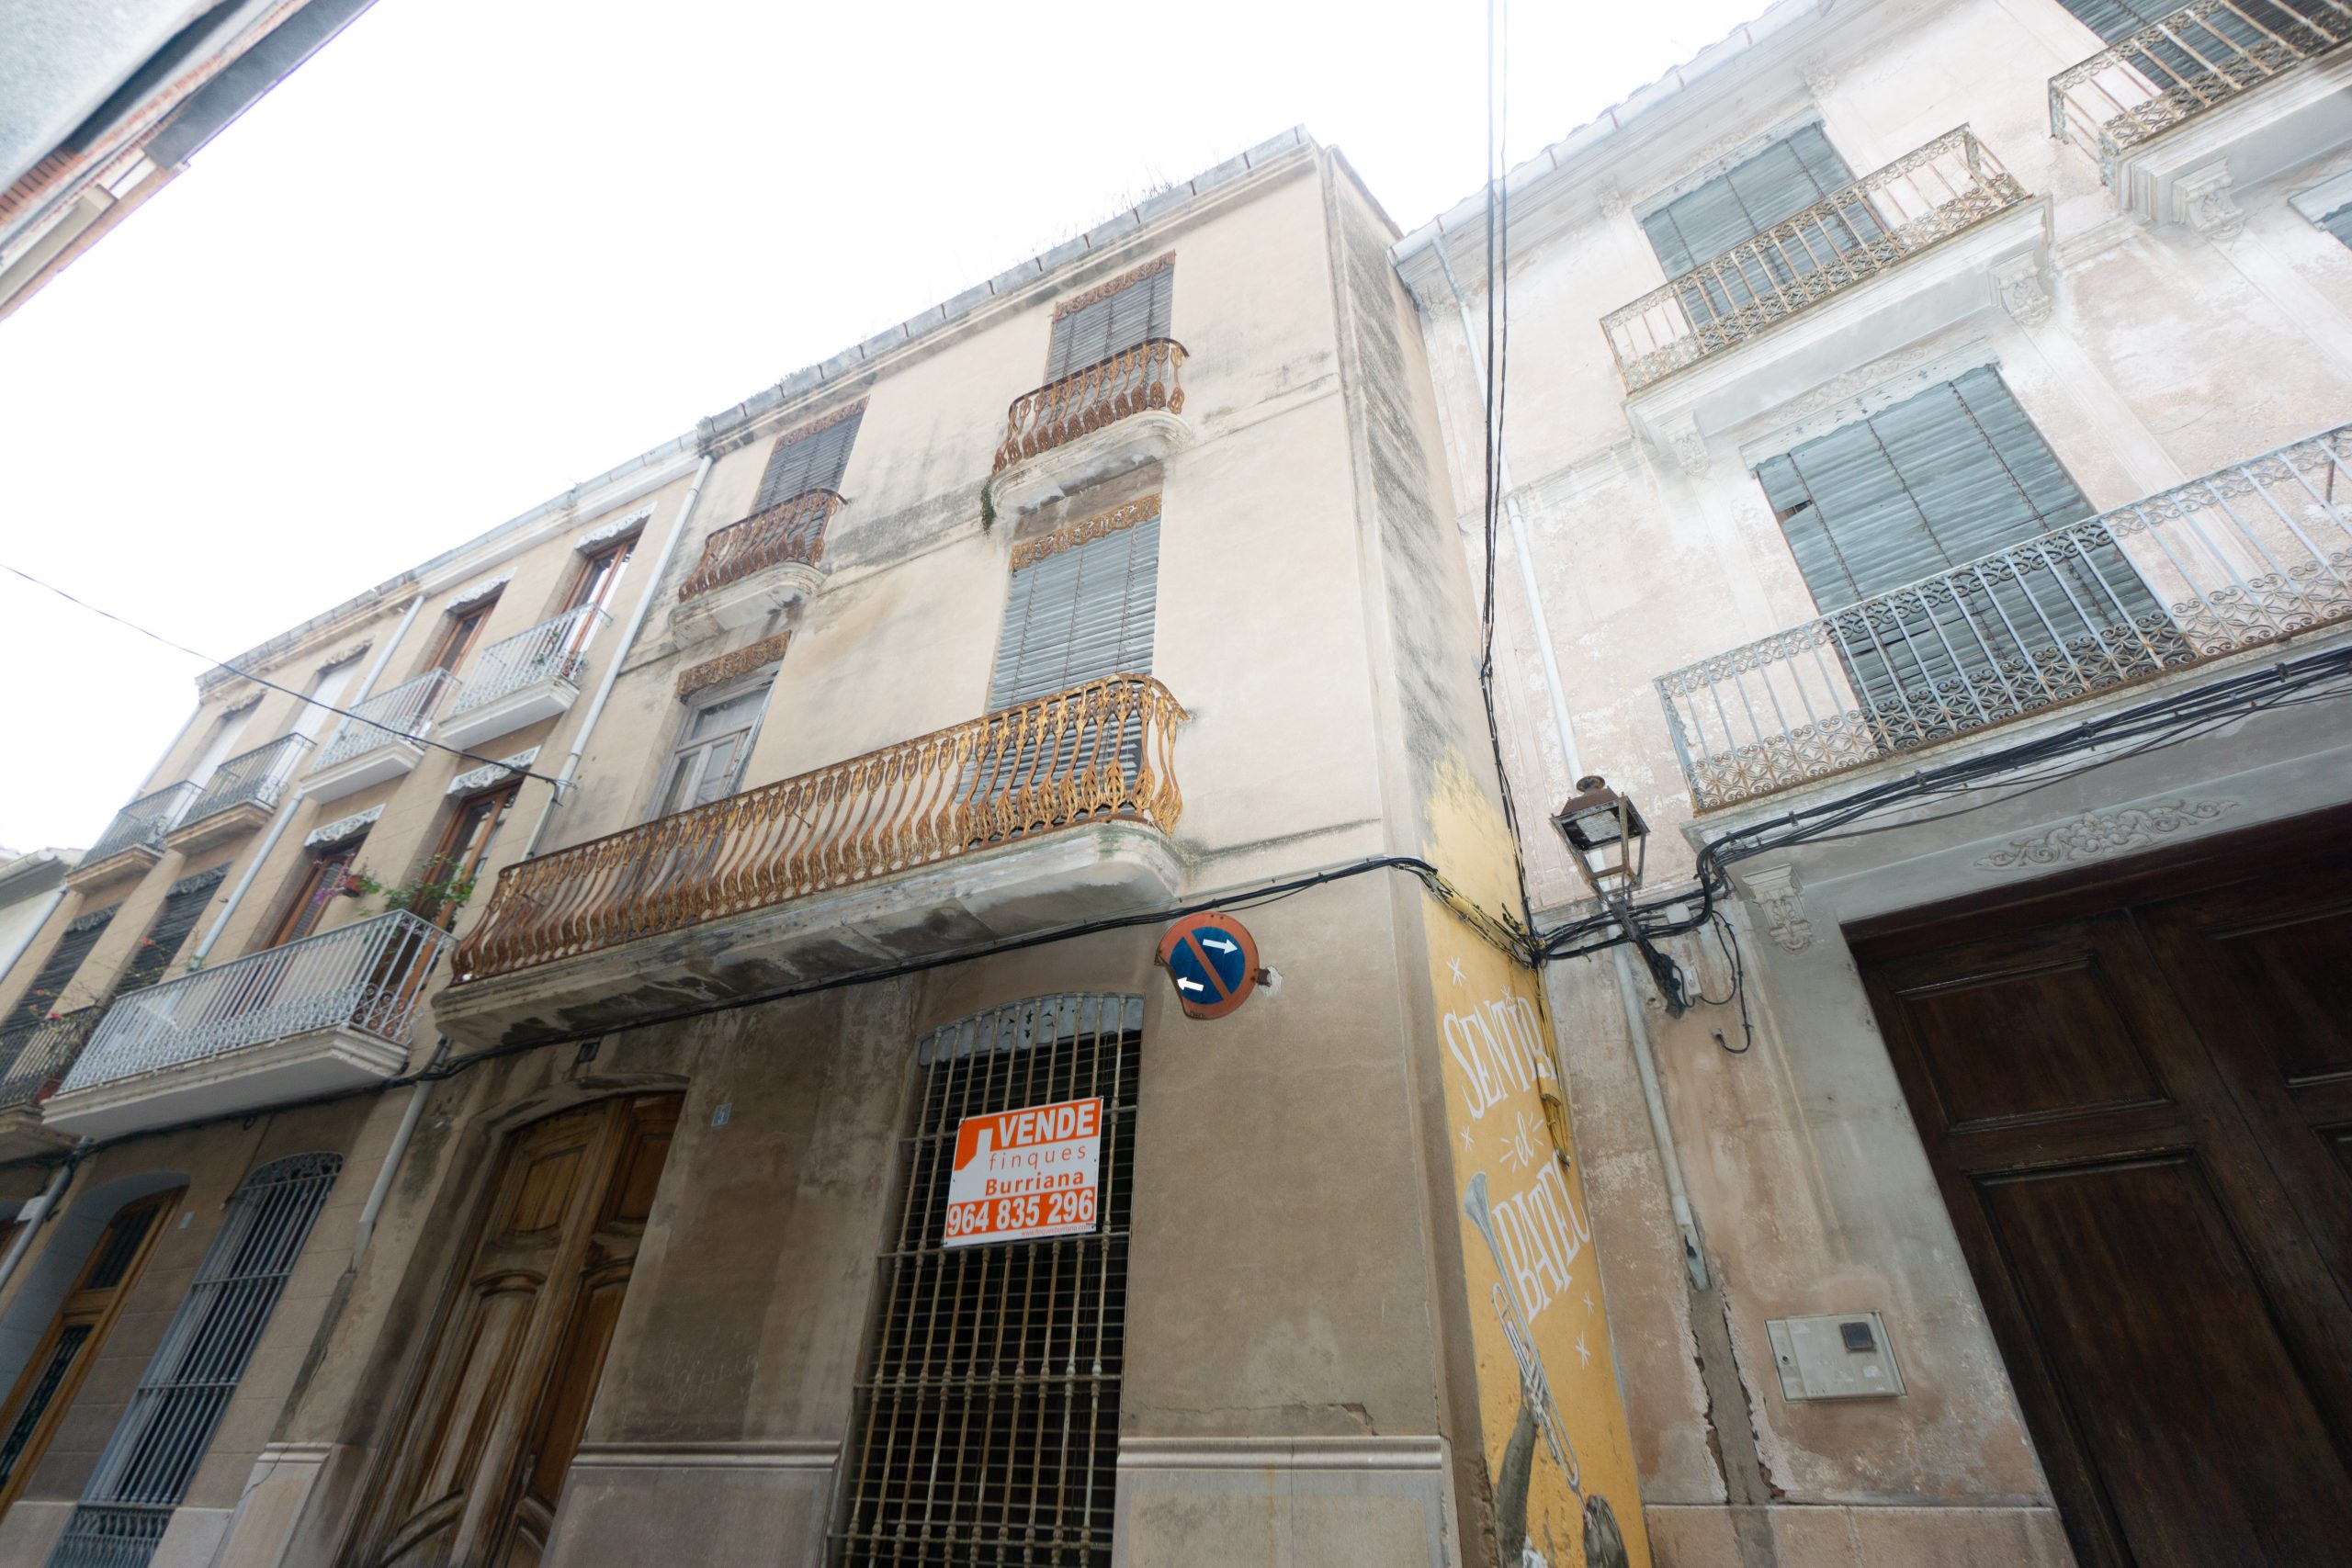 Casa adosada en venta en Burriana (Castellón) zona centro 